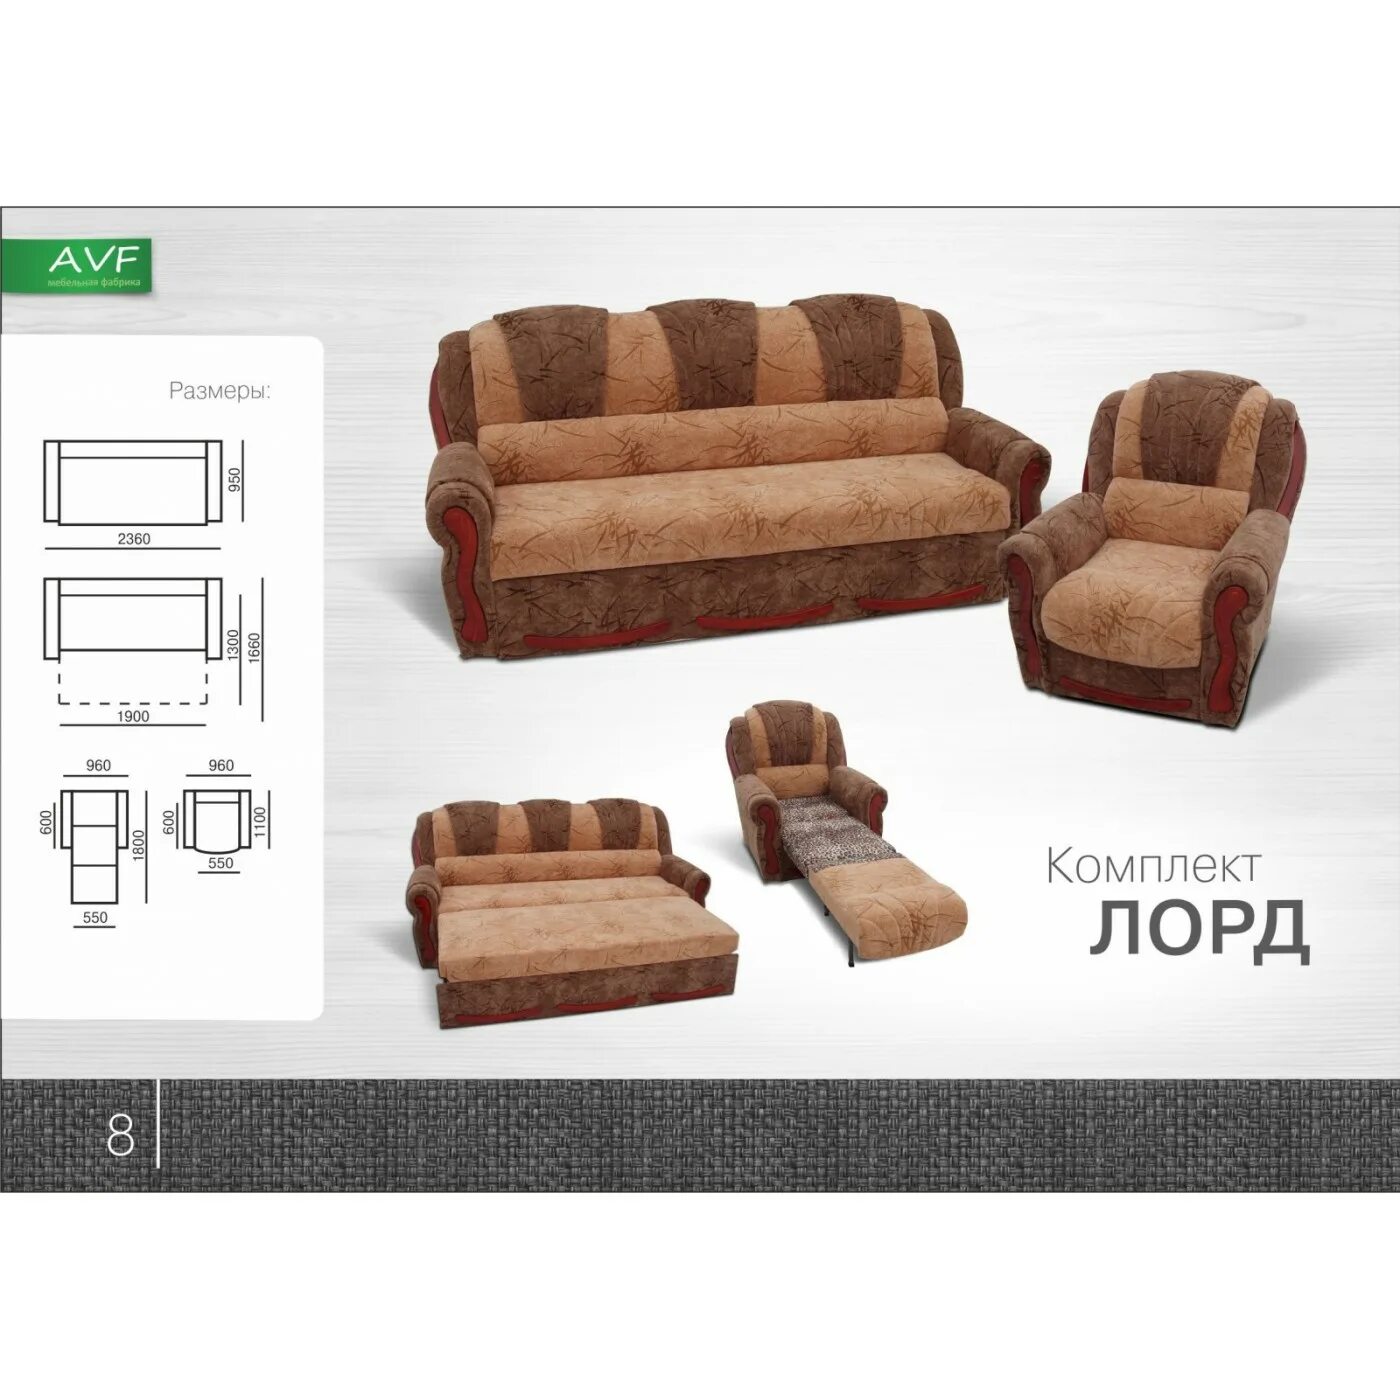 Комплект мягкой мебели. Диван и кресло комплект. Комплект диван и кресло раскладное. Набор мягкой мебели диван и кресло.